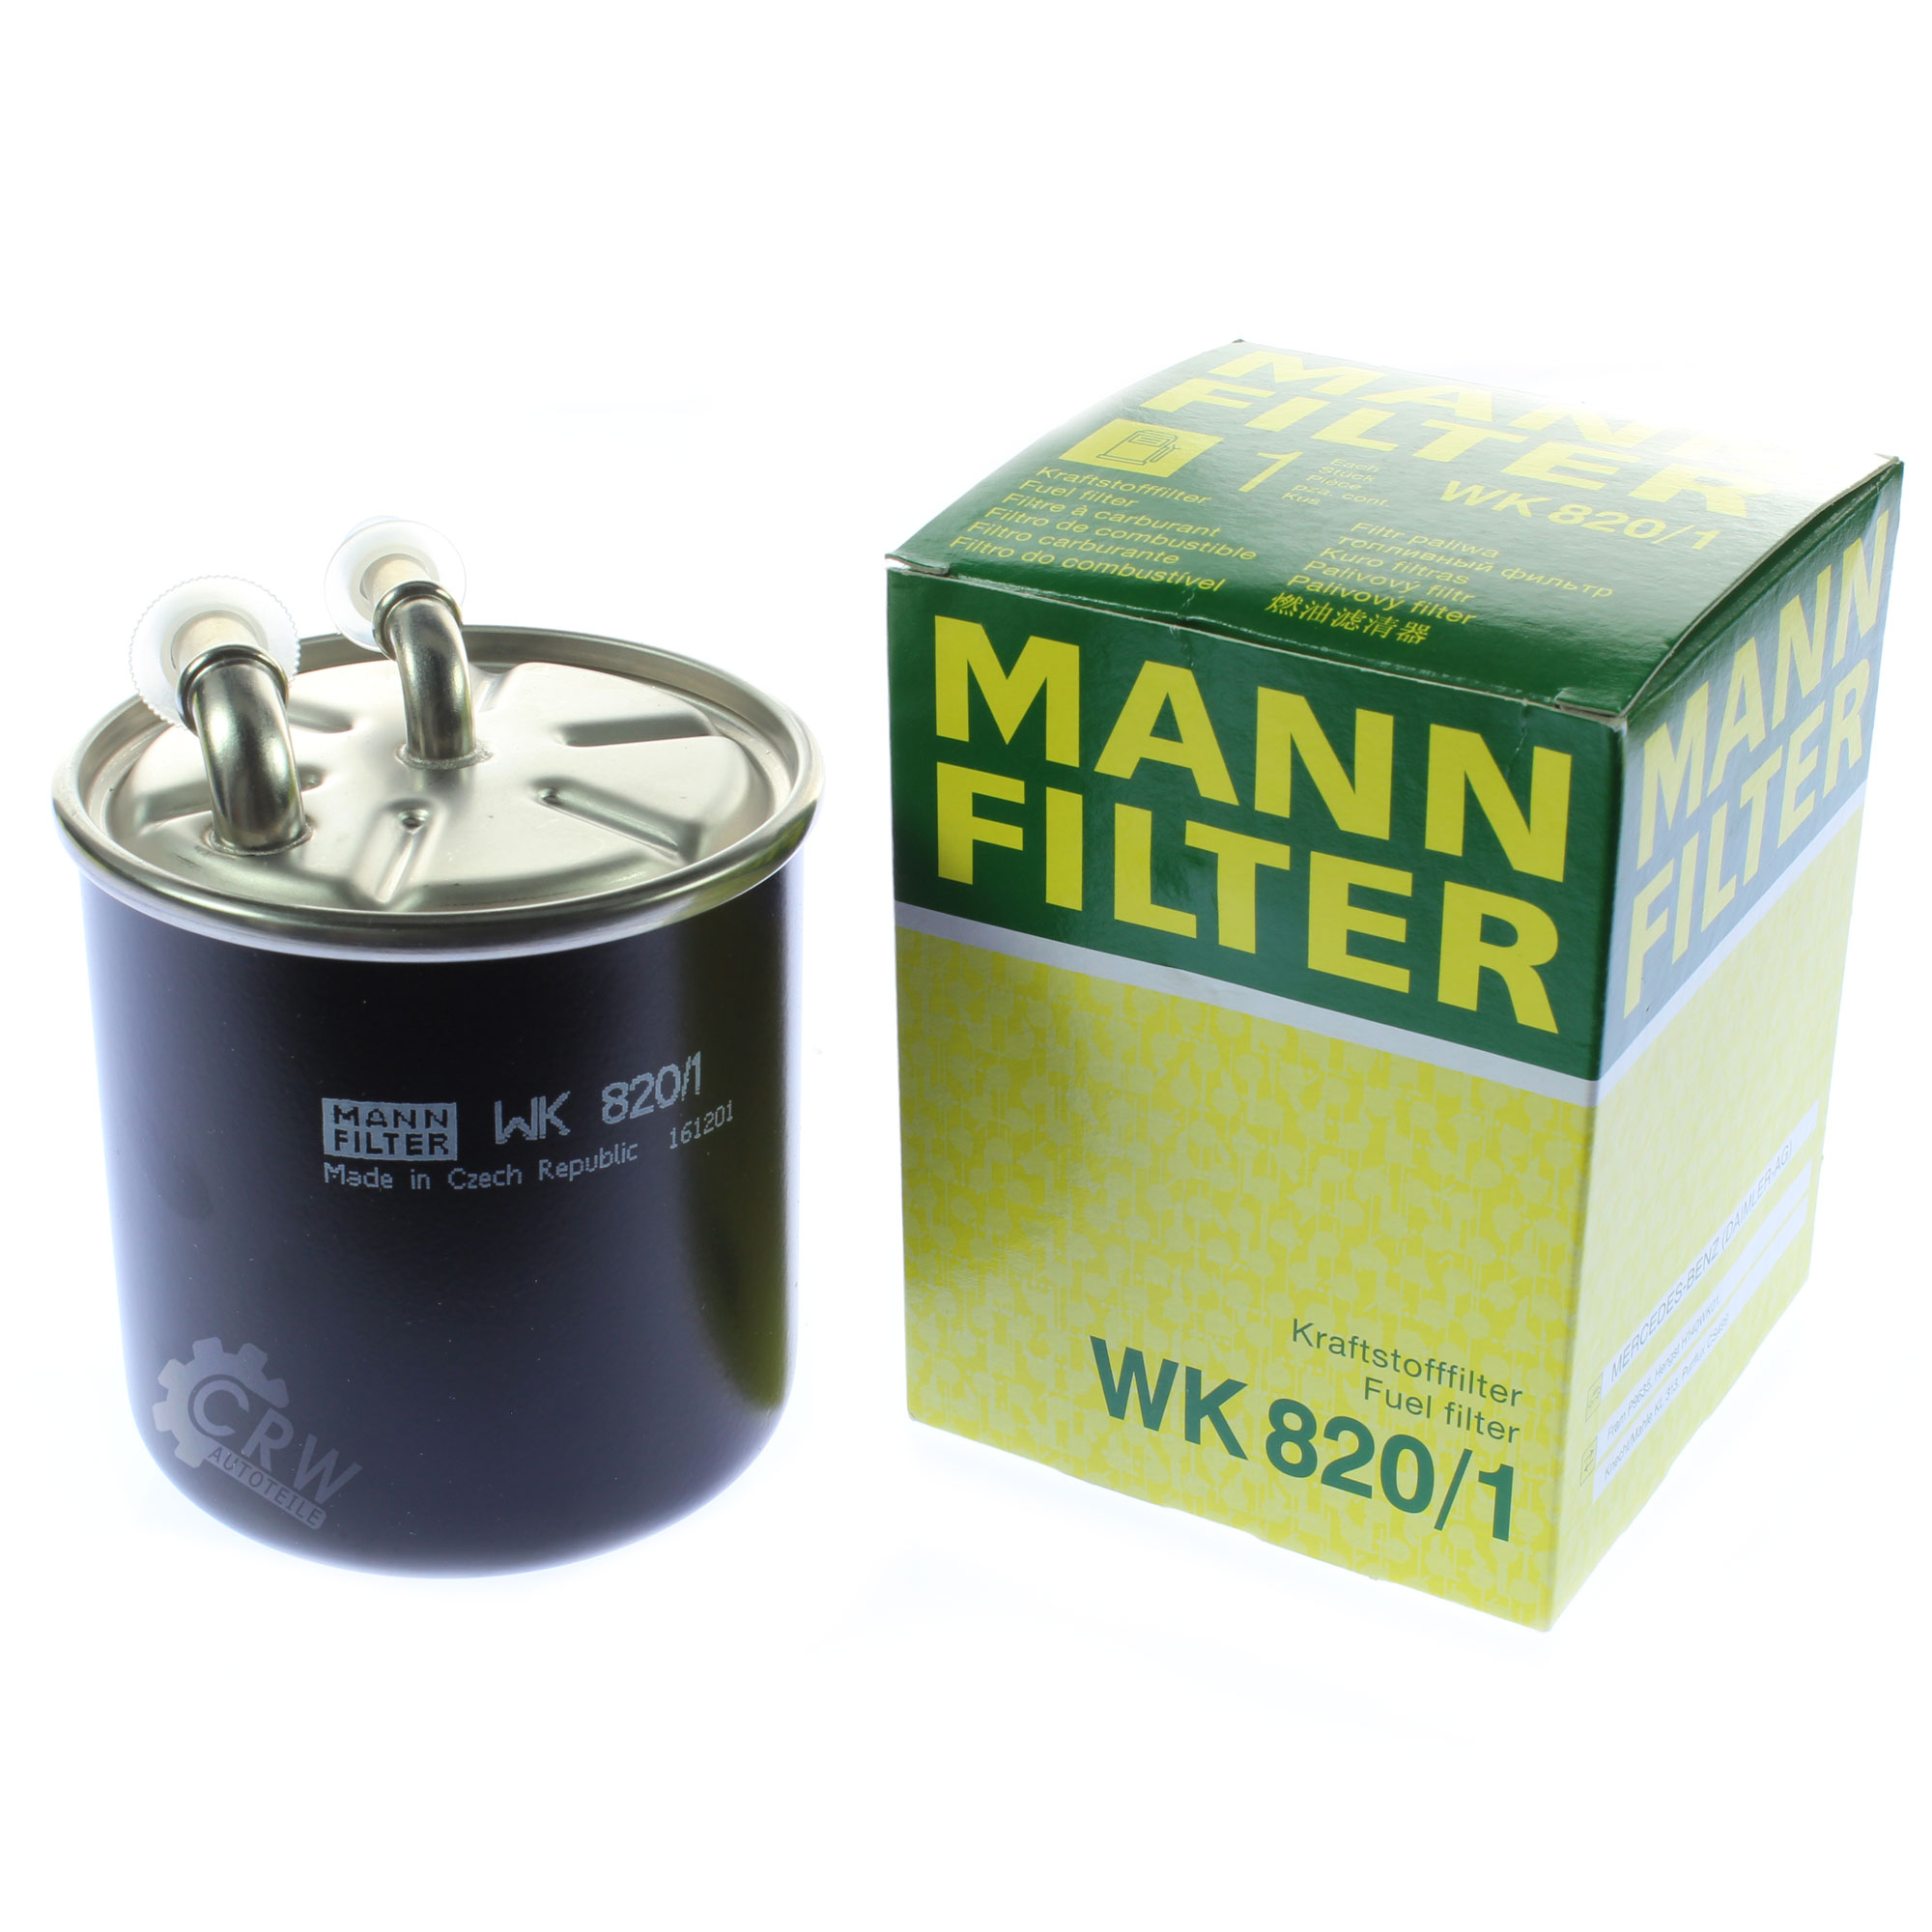 MANN-FILTER Kraftstofffilter WK 820/1 Fuel Filter